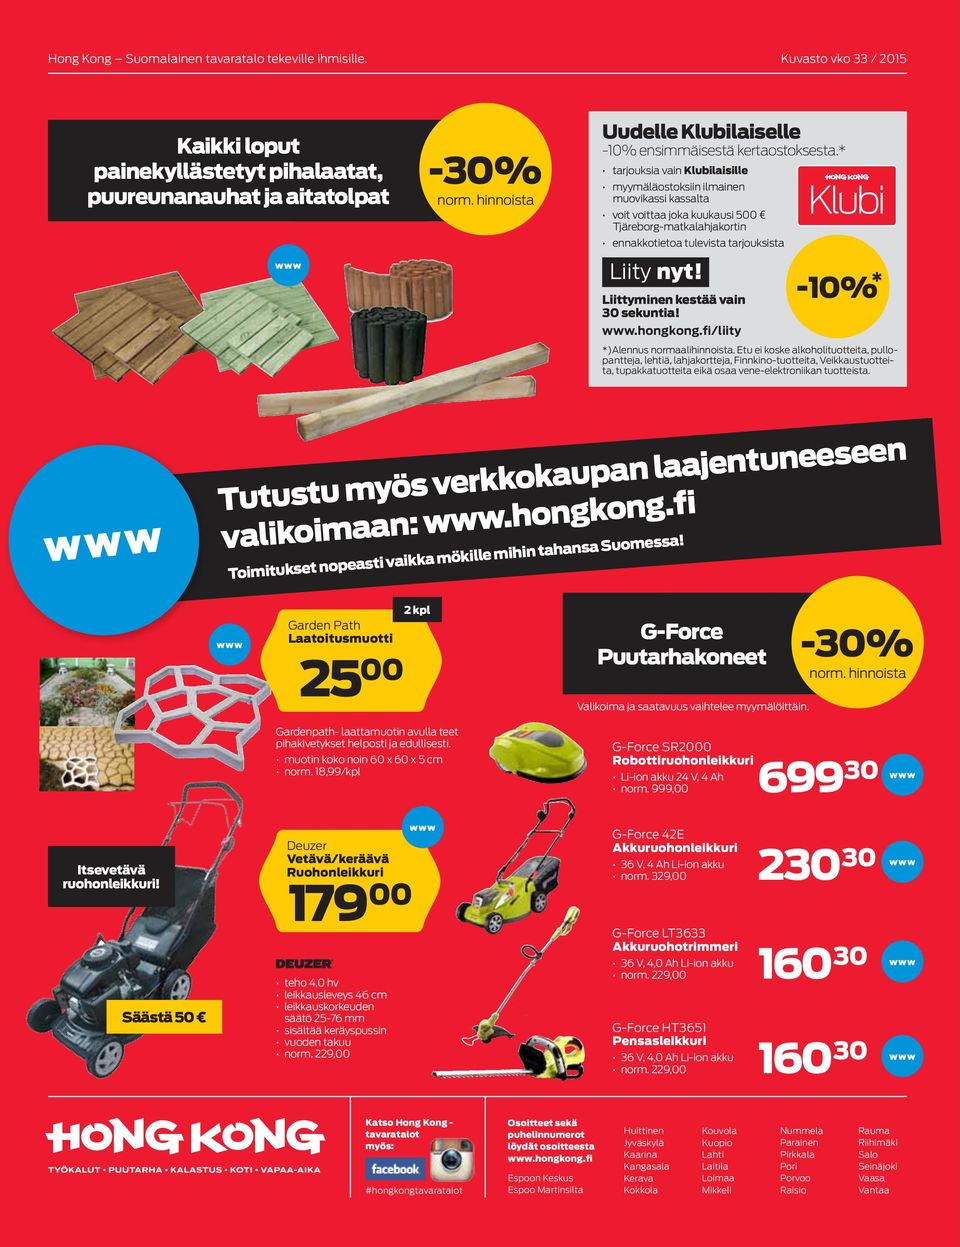 * tarjouksia vain Klubilaisille myymäläostoksiin ilmainen muovikassi kassalta voit voittaa joka kuukausi 500 Tjäreborg-matkalahjakortin ennakkotietoa tulevista tarjouksista Liity nyt!